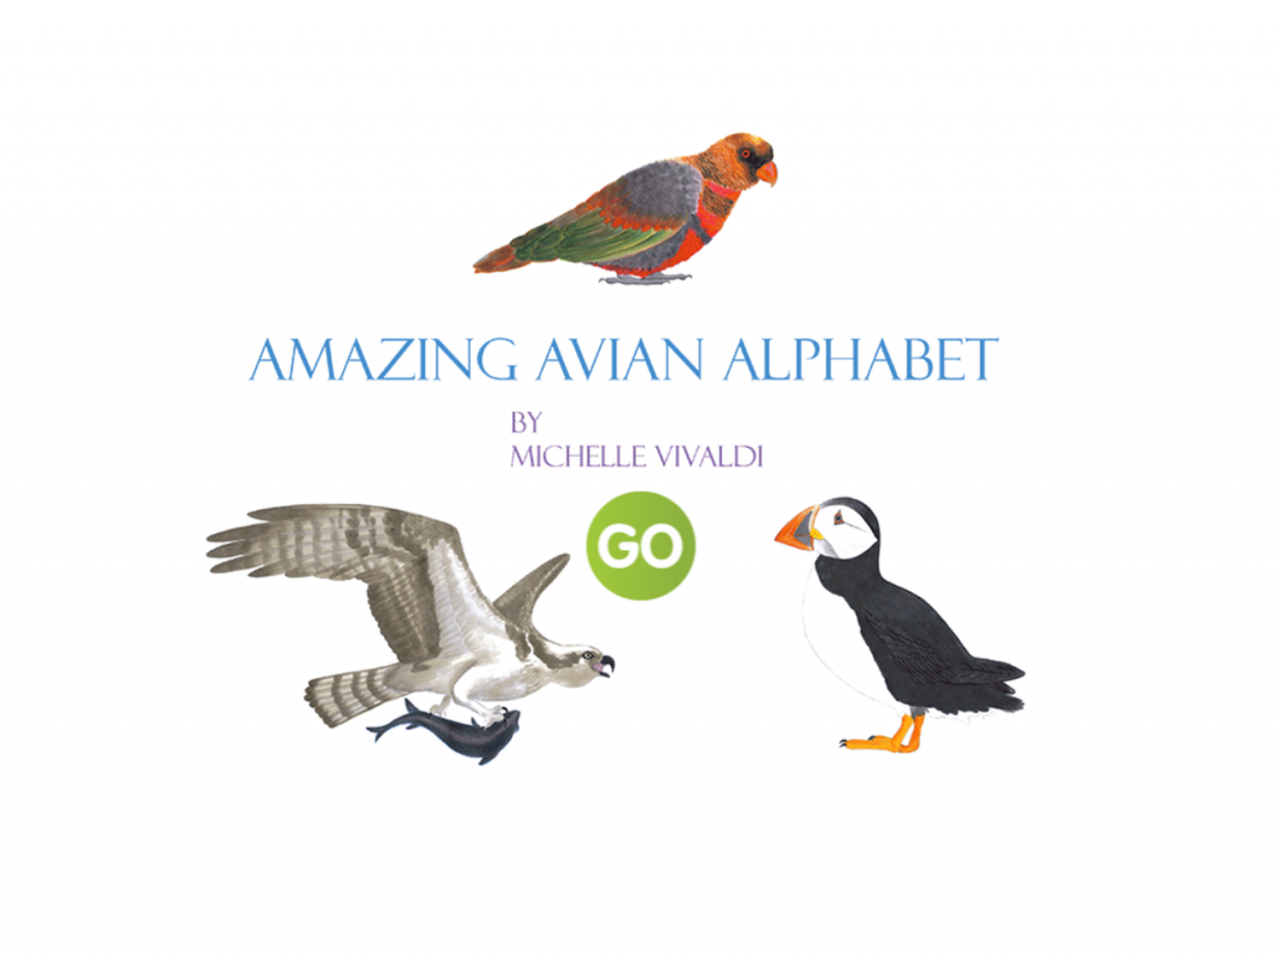 An avian alphabet book